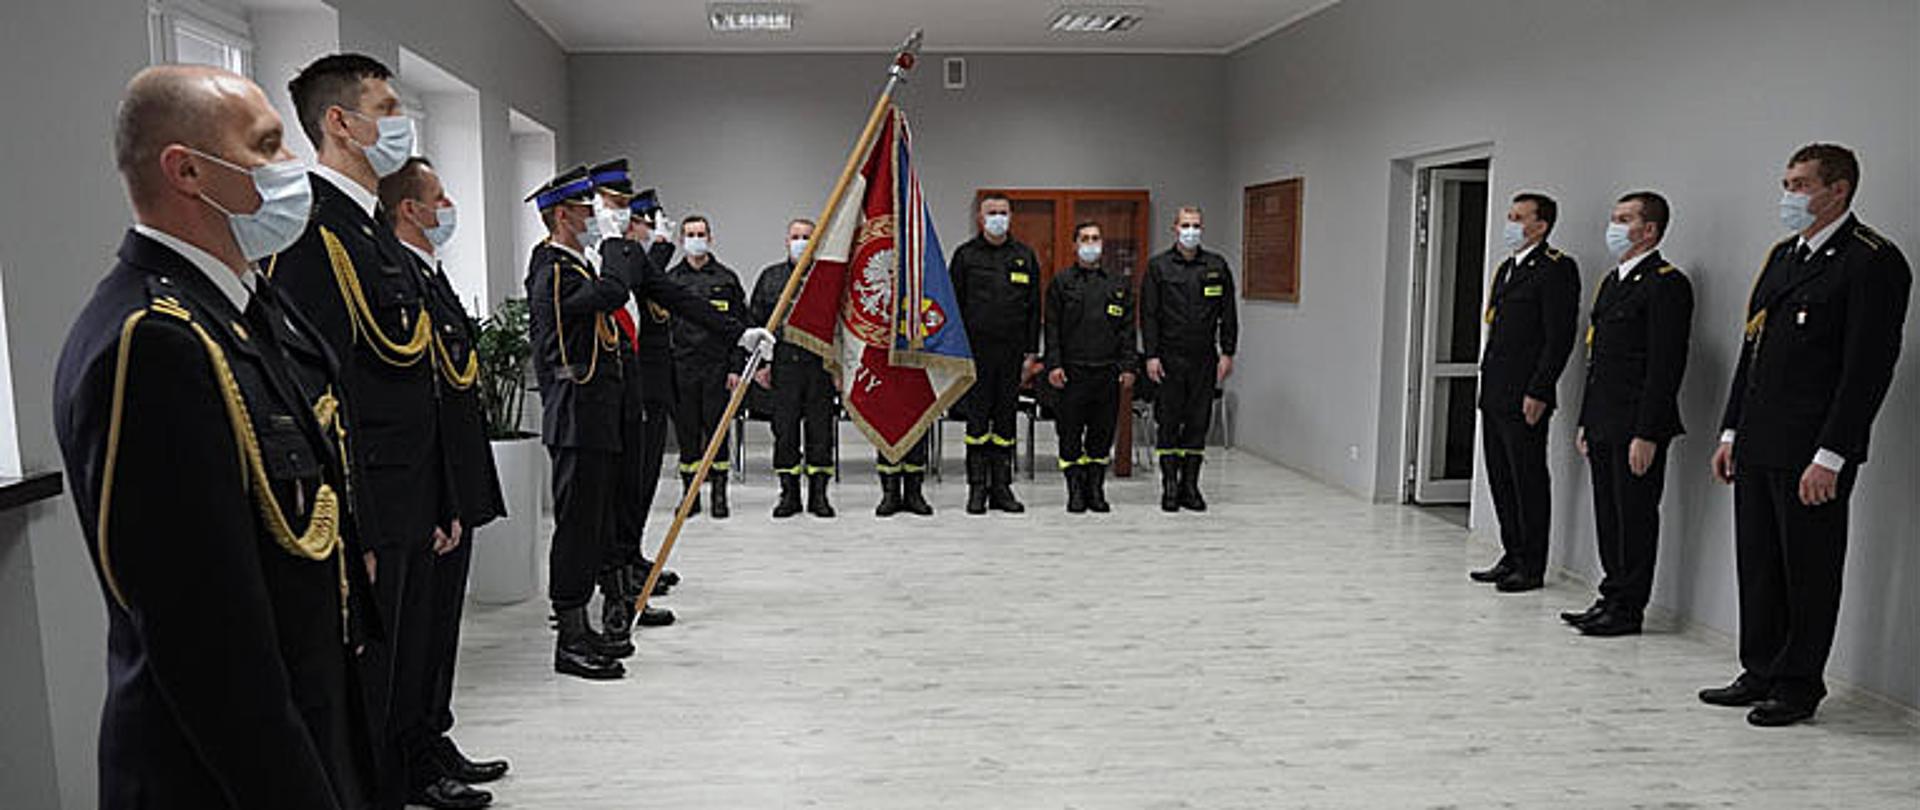 strażacy stoją w pozycji zasadniczej słuchając mazurka Dąbrowskiego, po lewo trzech strażaków ubranych w mundur galowy ze sznurem w maseczkach ochronnych na twarzy, po środku na lewej stronie sali trzech strażaków ubranych w mundur galowy ze sznurem w maseczkach ochronnych na twarzy stoi w poczcie sztandarowym, jeden trzyma sztandar a dwóch oddaje honor podczas śpiewu hymnu państwowego, w głębi sześciu strażaków ubranych w umundurowanie koszarowe z maseczka ochronną na twarzy stoi w pozycji zasadniczej, po prawej stronie zdjęcia stoi trzech strażaków w mundur galowy ze sznurem w maseczkach ochronnych na twarzy w pozycji zasadniczej